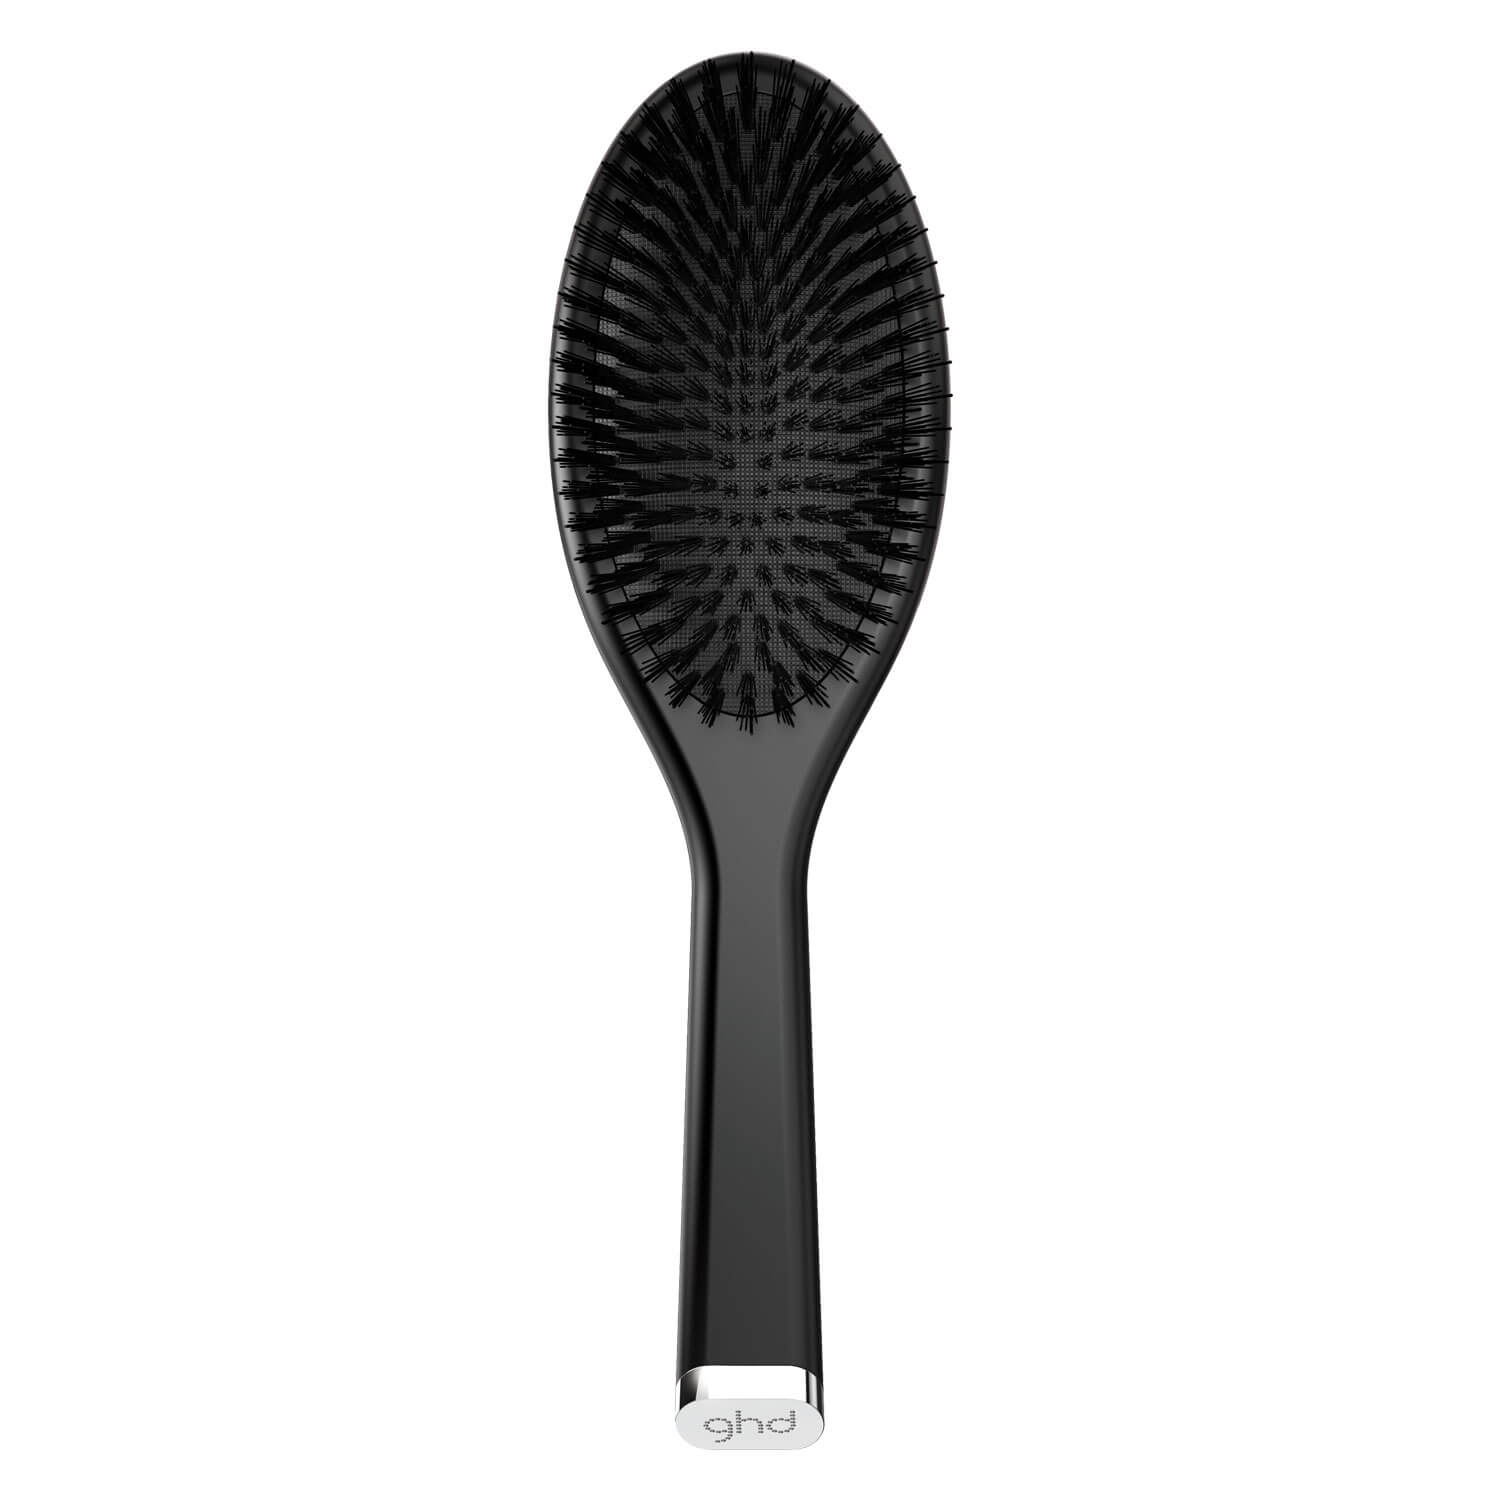 Produktbild von ghd Brushes - The Dresser Oval Brush